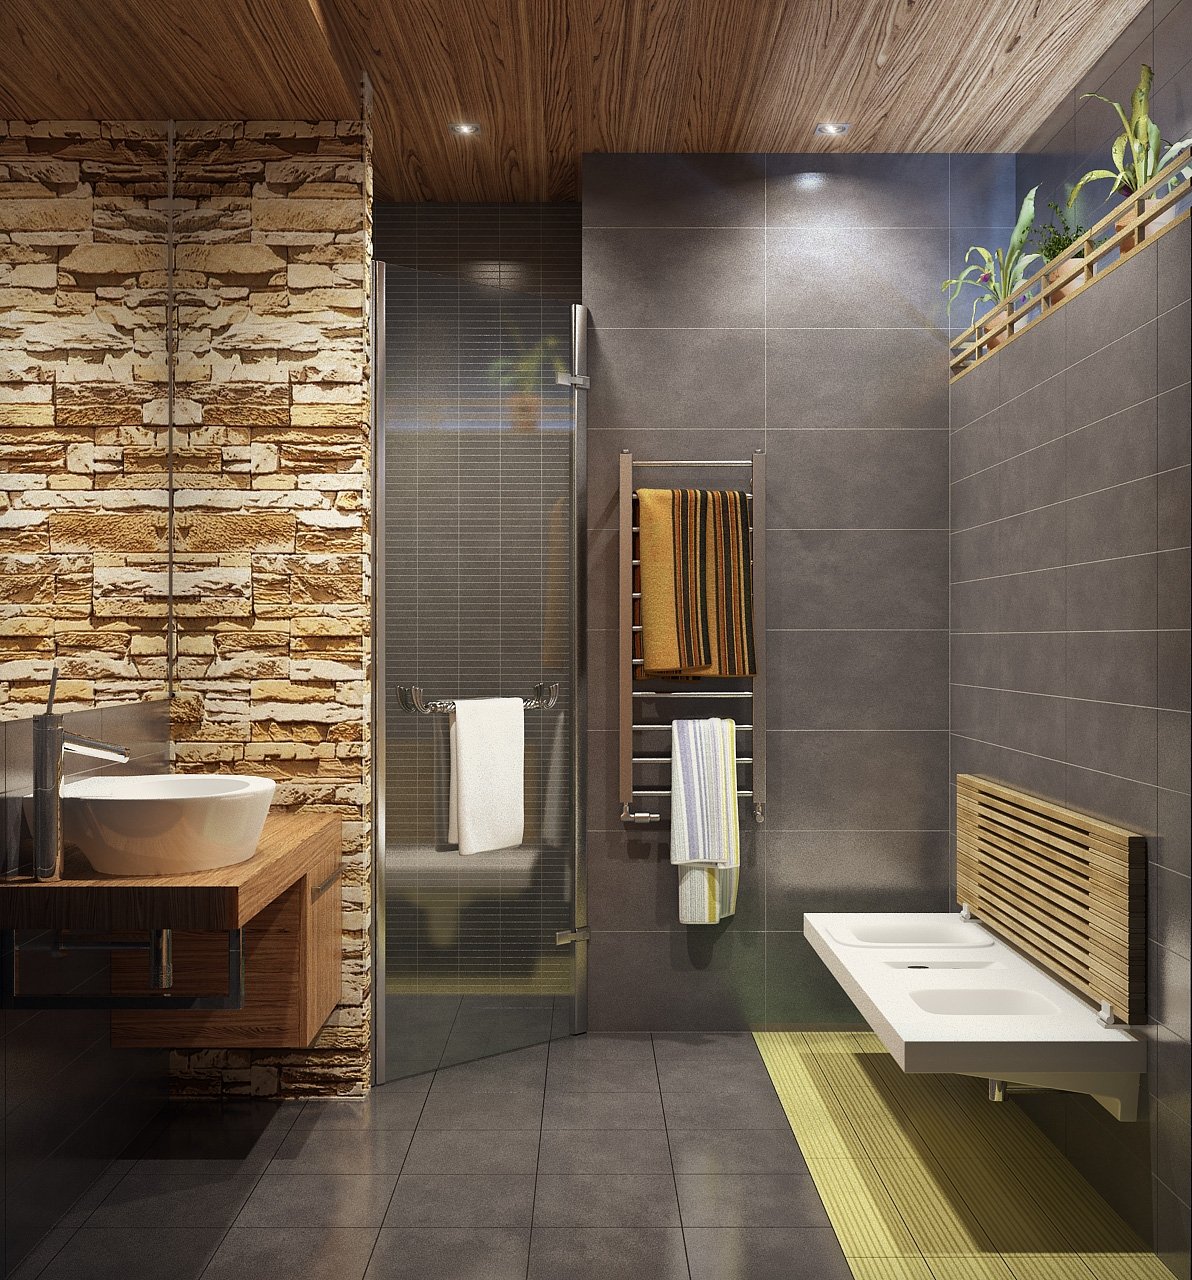 Ванная комната отделка стен панелями. Деревянный потолок в ванной. Дерево в интерьере ванной комнаты. Деревянные панели в ванной комнате. Современная отделка санузла.